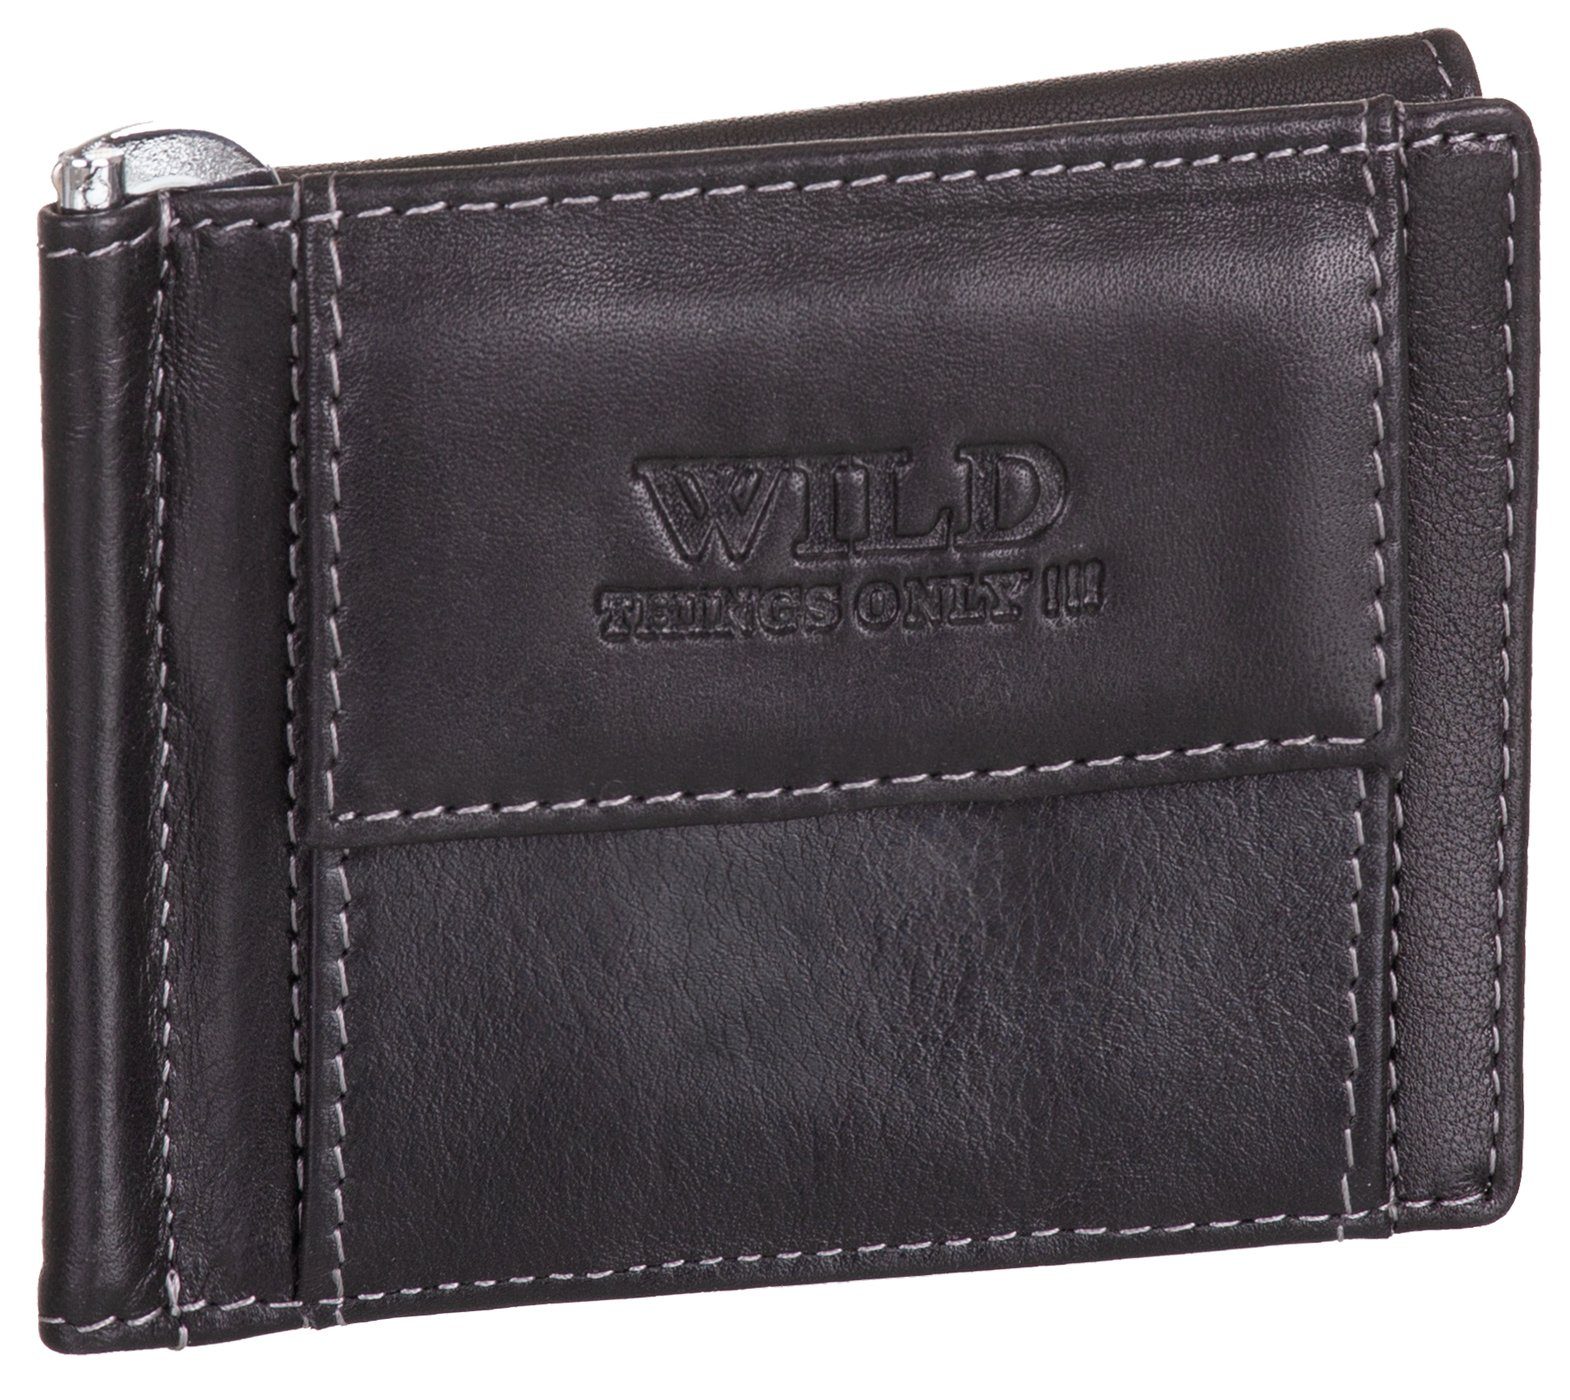 BAG STREET Geldbörse, Geldklammer Echt Leder RFID-Schutz mit Münzfach Geldclip Portemonnaie Geldbeutel schwarz